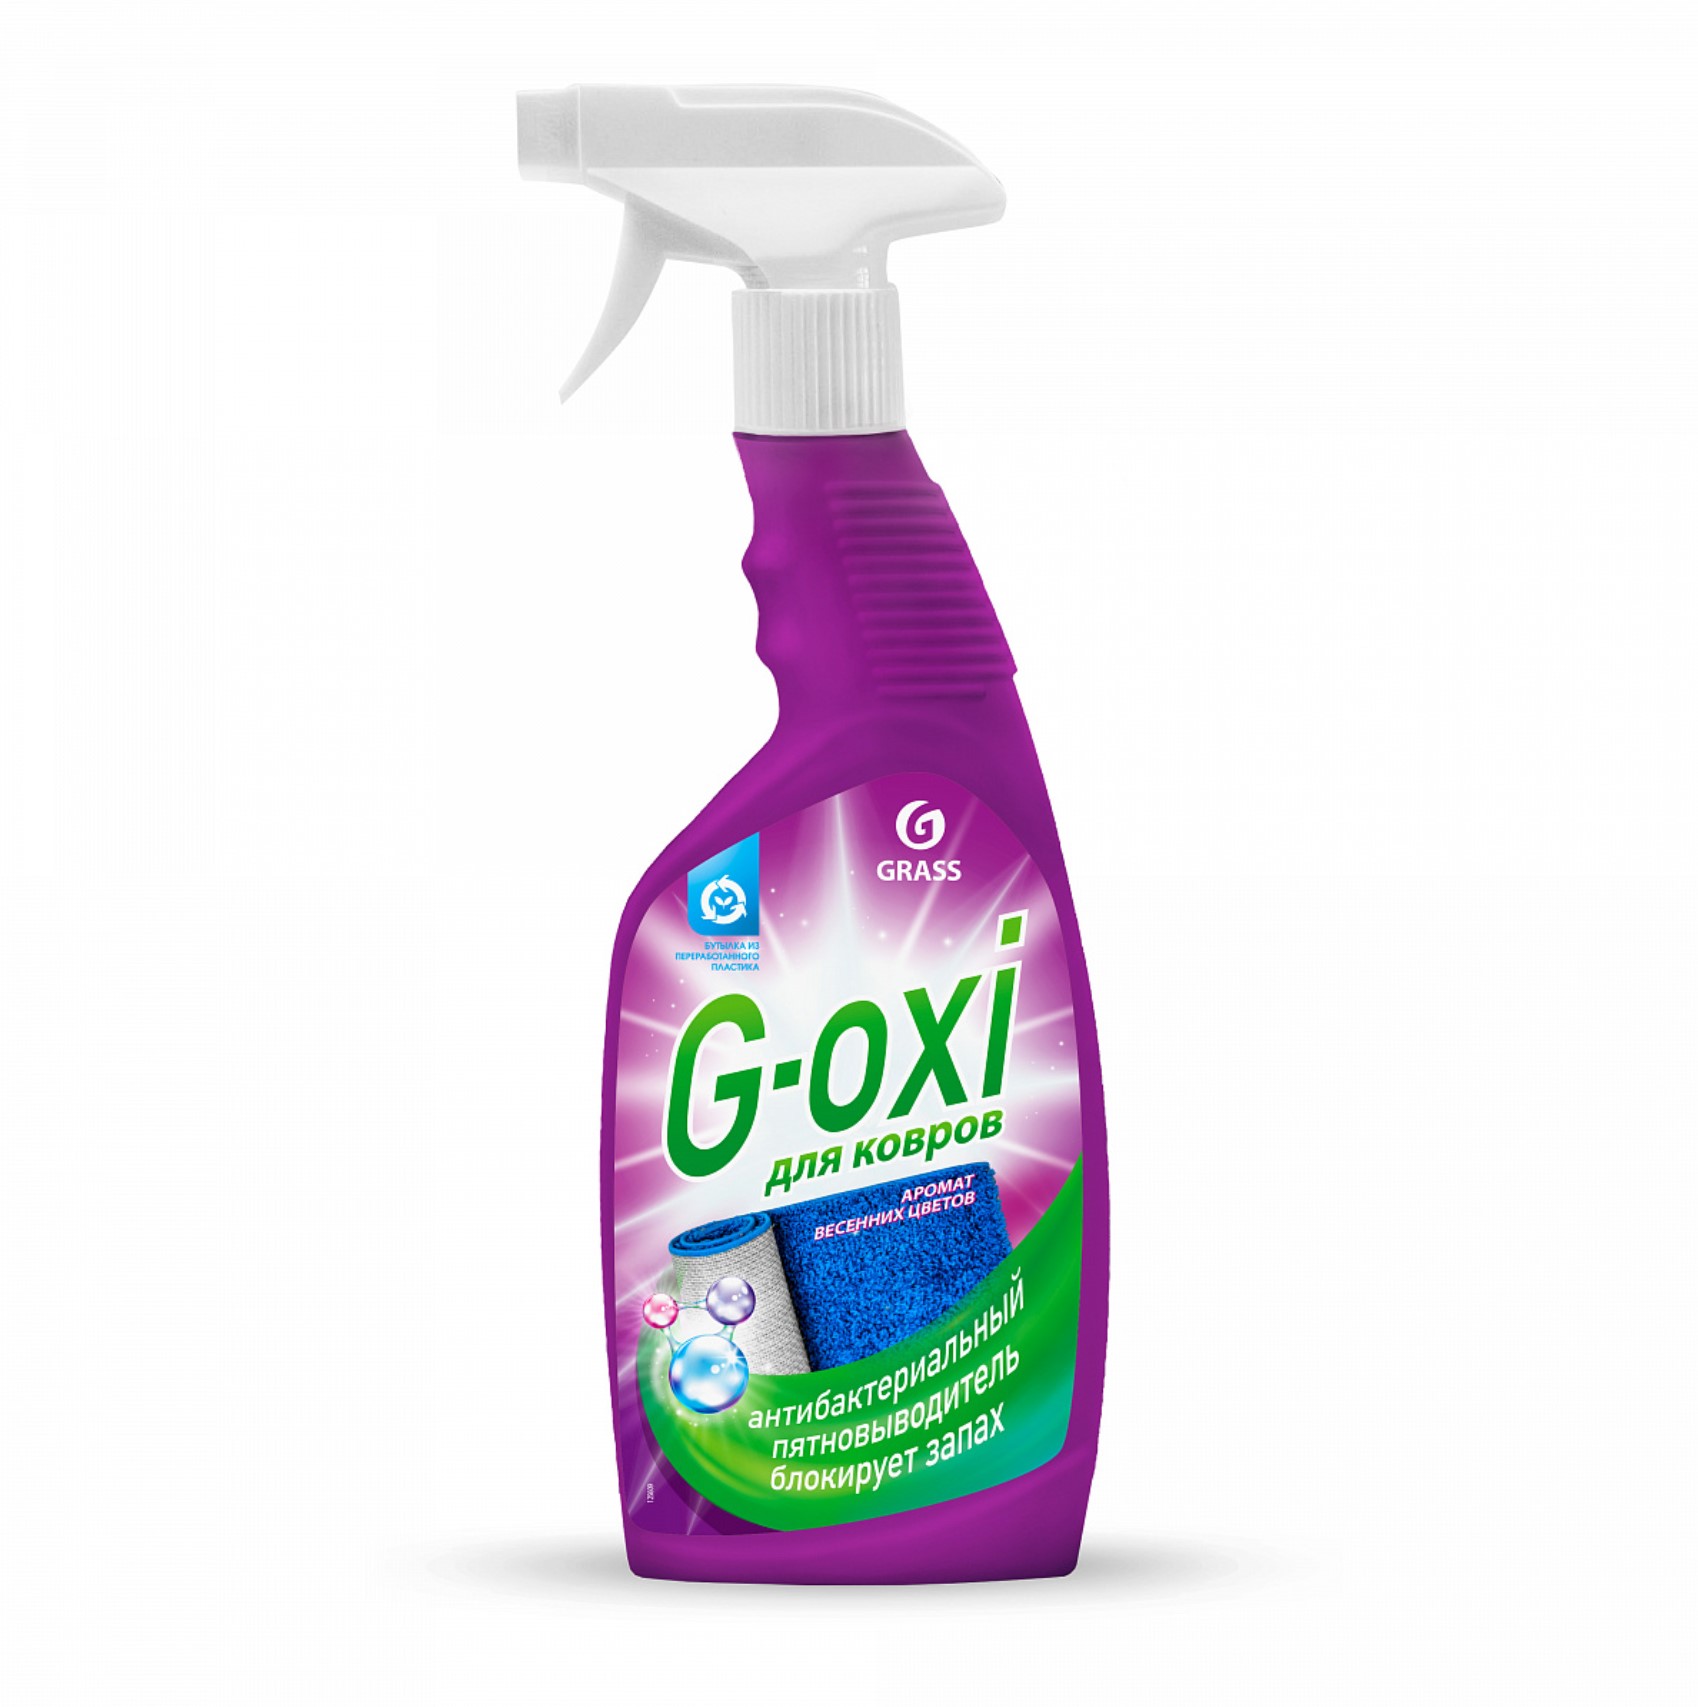 Пятновыводитель для ковров и ковровых покрытий "g-oxi" 600 мл (спрей) антибакт. (1/12) "grass"